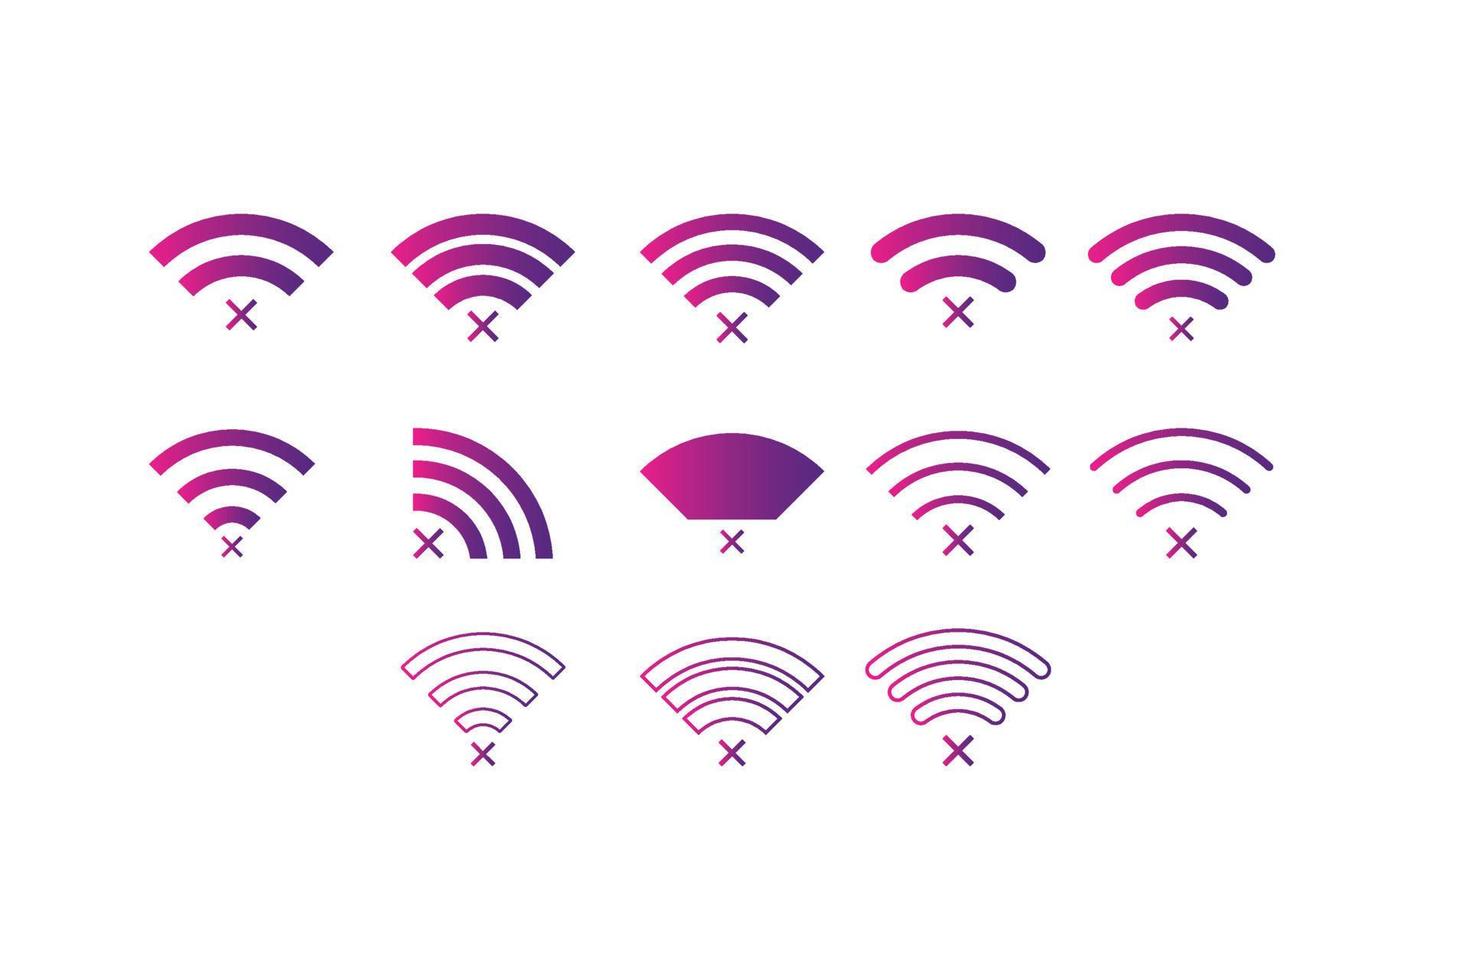 conjunto de cor de gradiente de ícone de símbolo de sinal de rede sem fio vetor